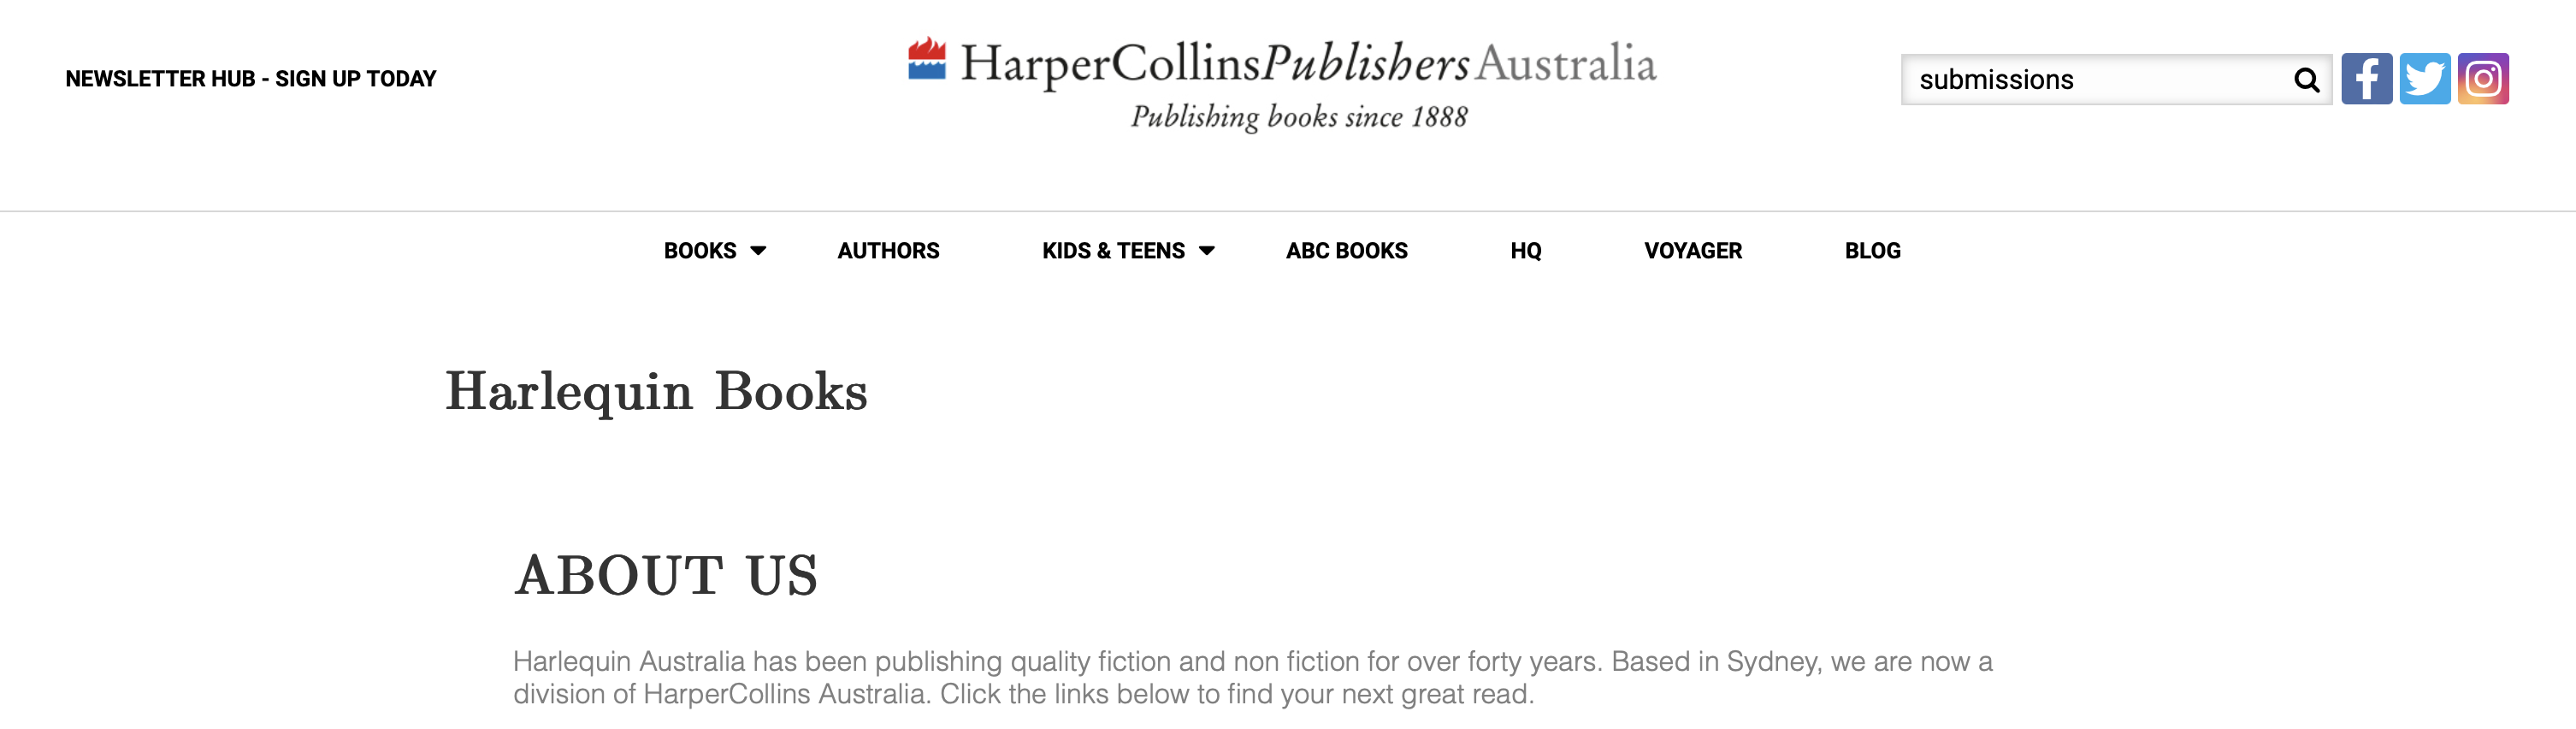 harlequin australian publishing houses